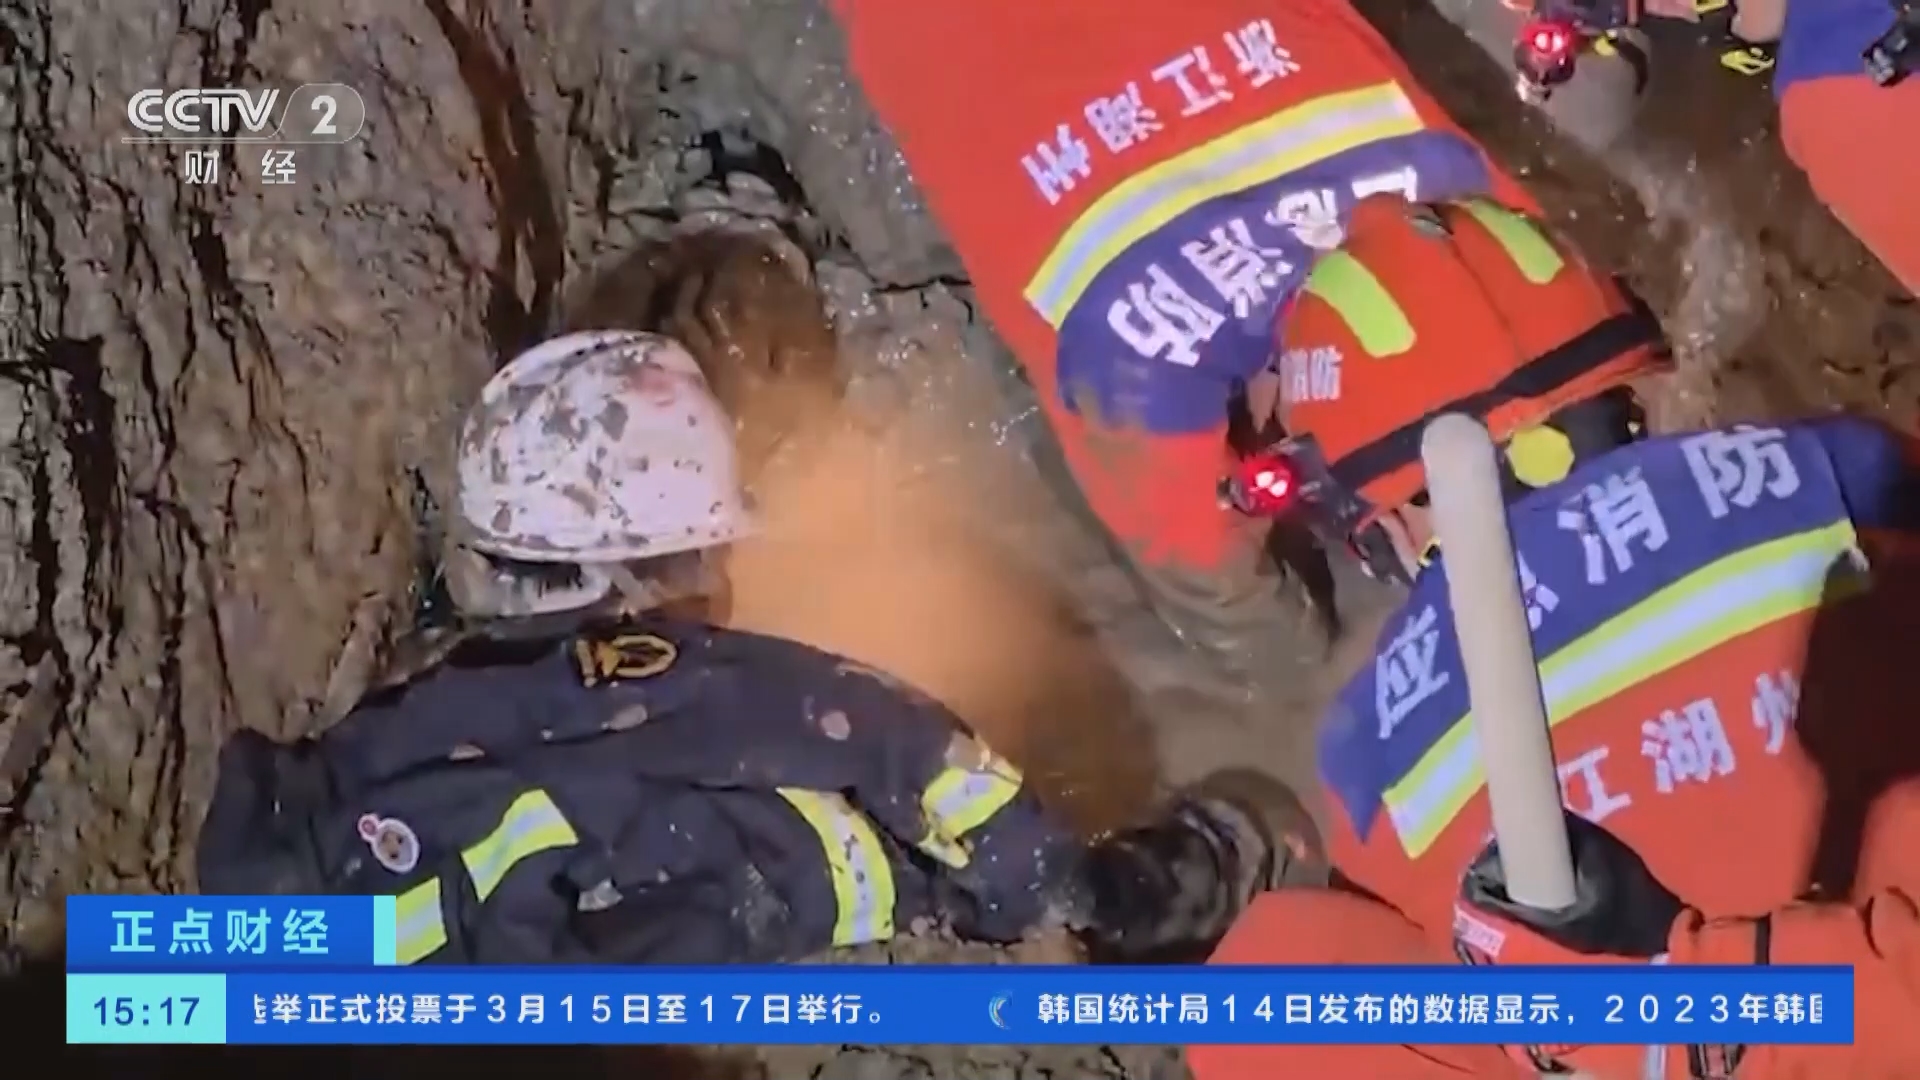 工人陷入淤泥被困 消防员营救